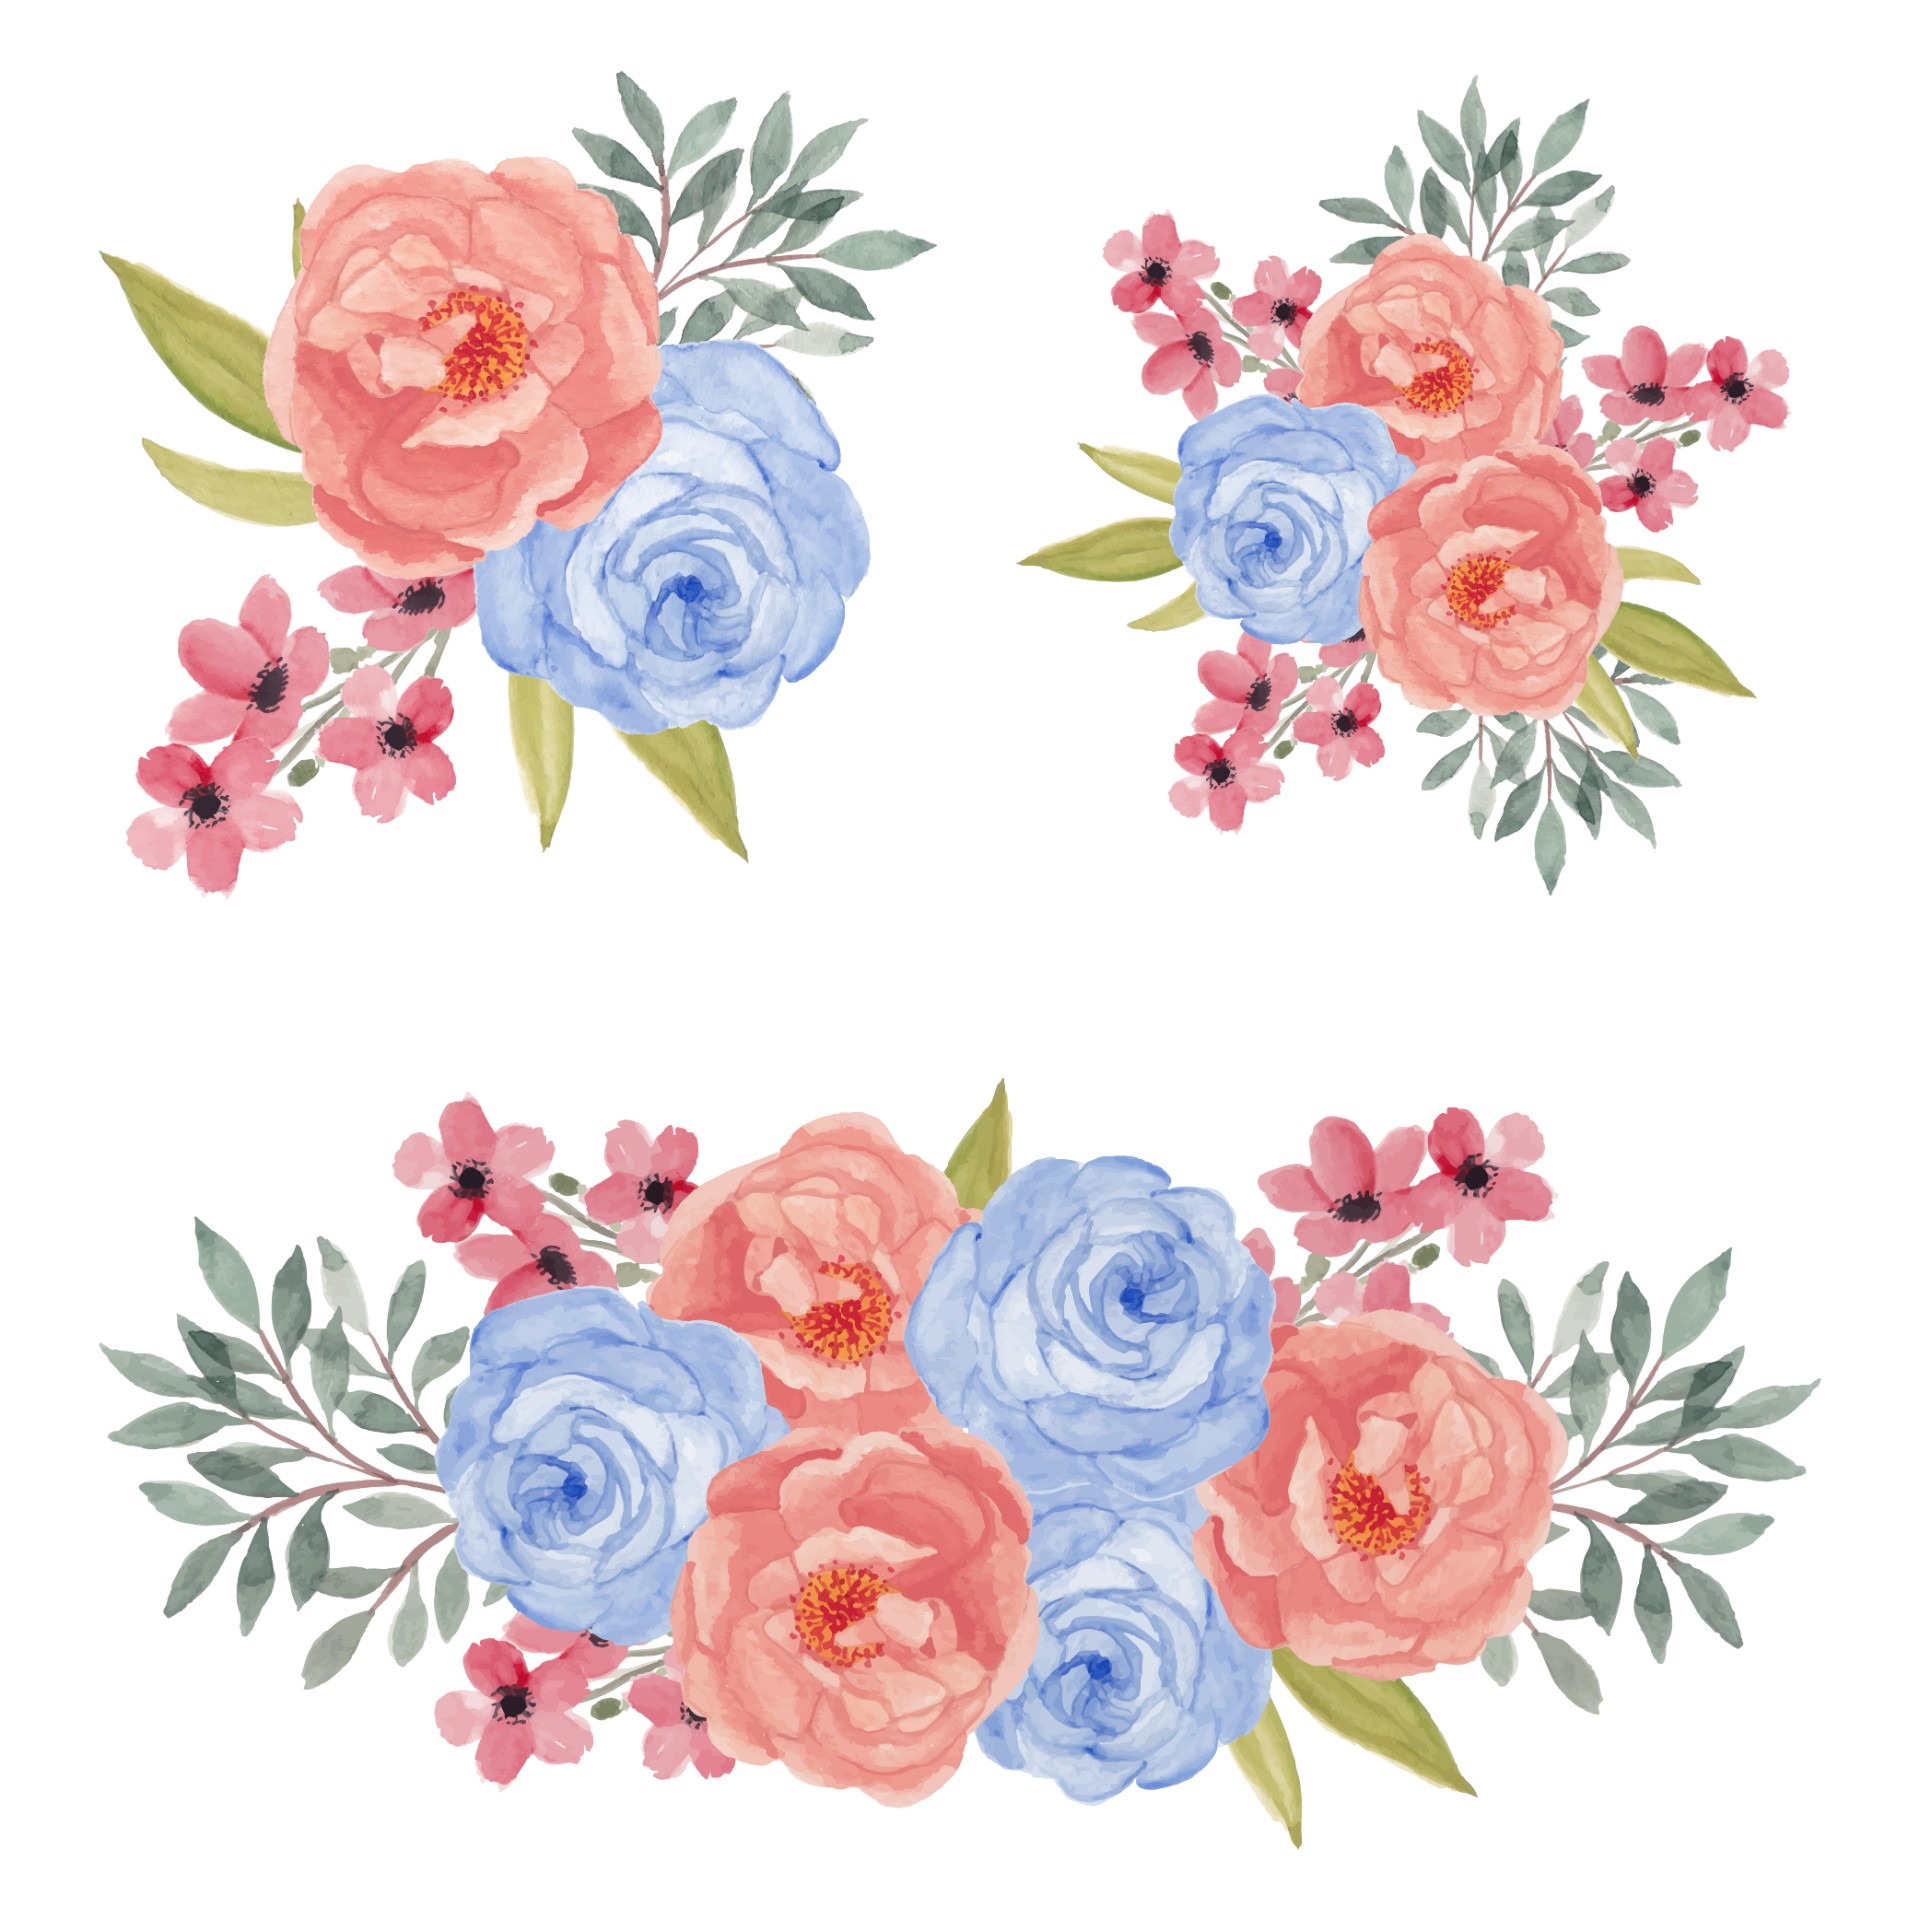 五颜六色的玫瑰花束插图0